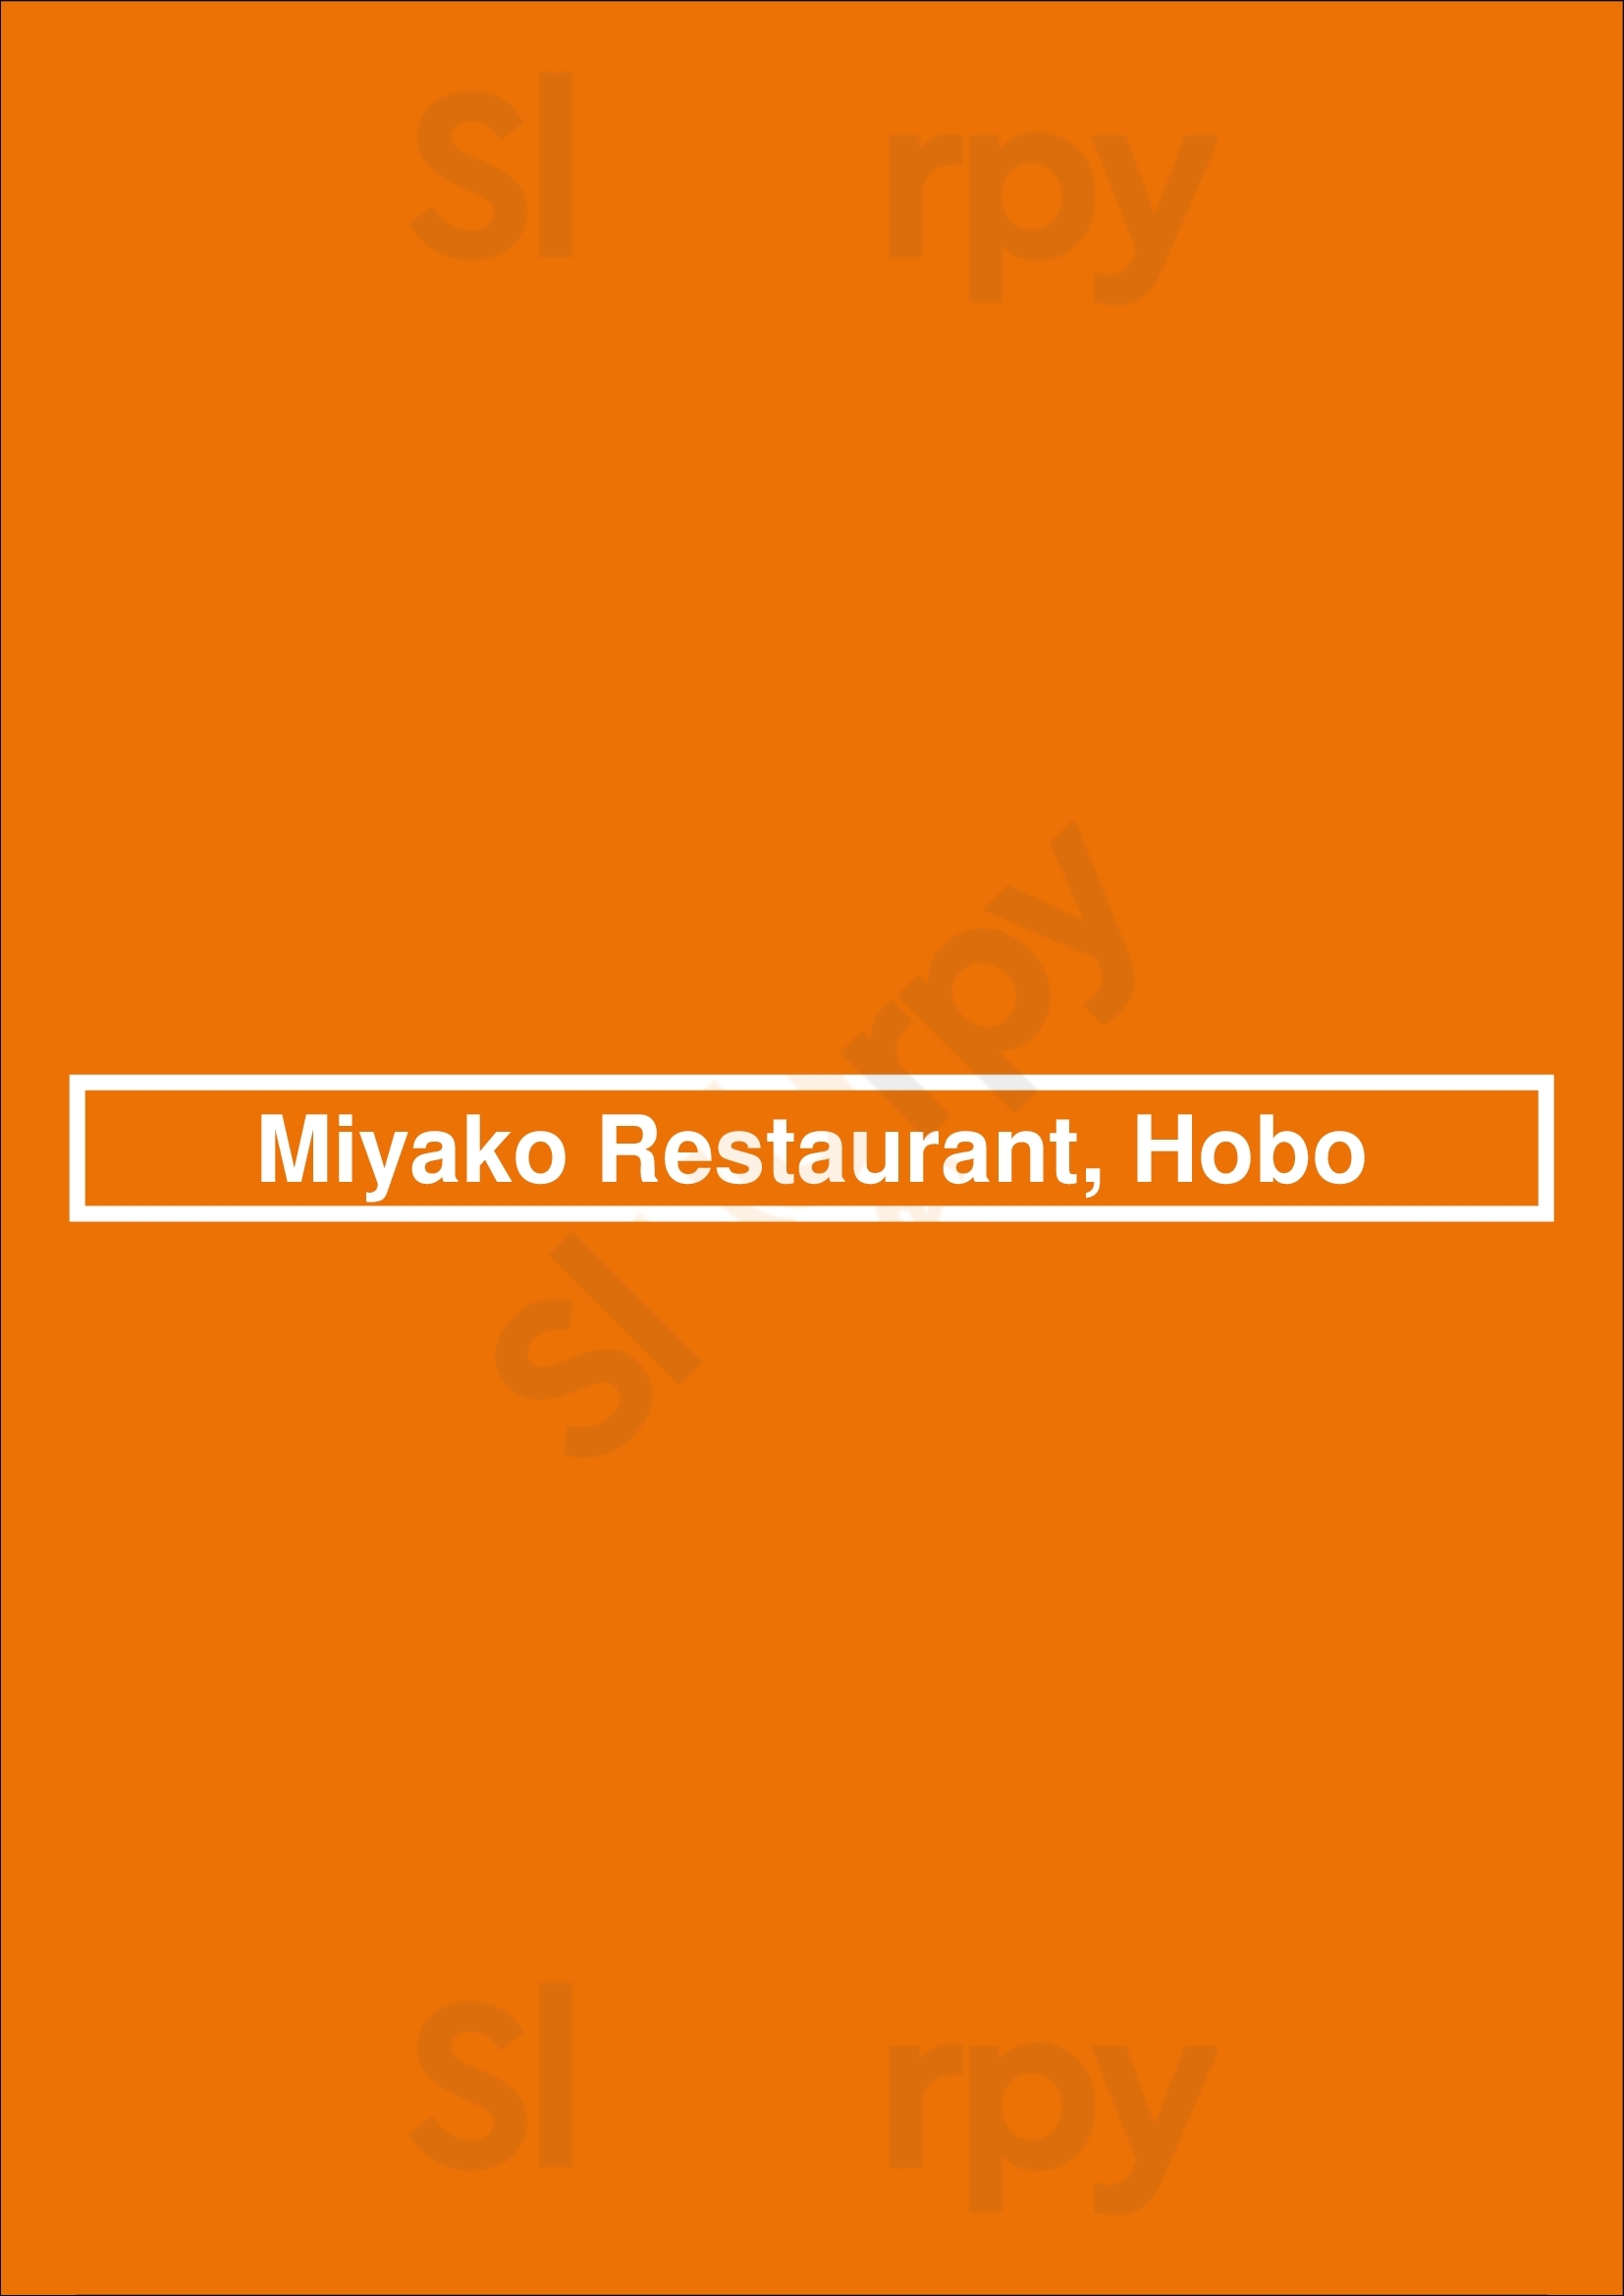 Miyako Restaurant, Hobo Honolulu Menu - 1